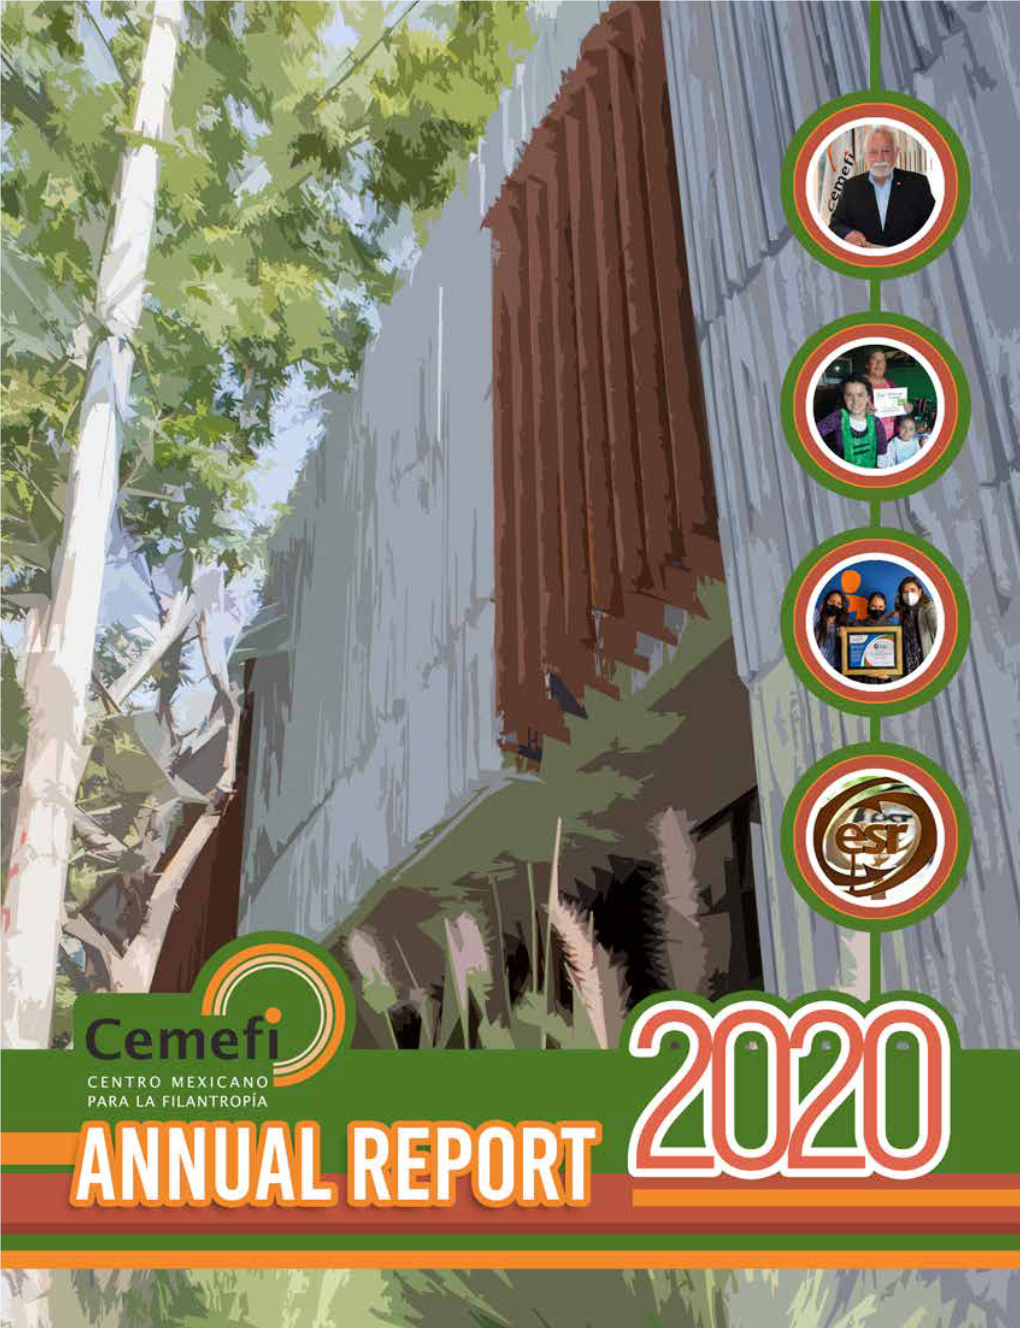 Cemefi's Annual Report 2020